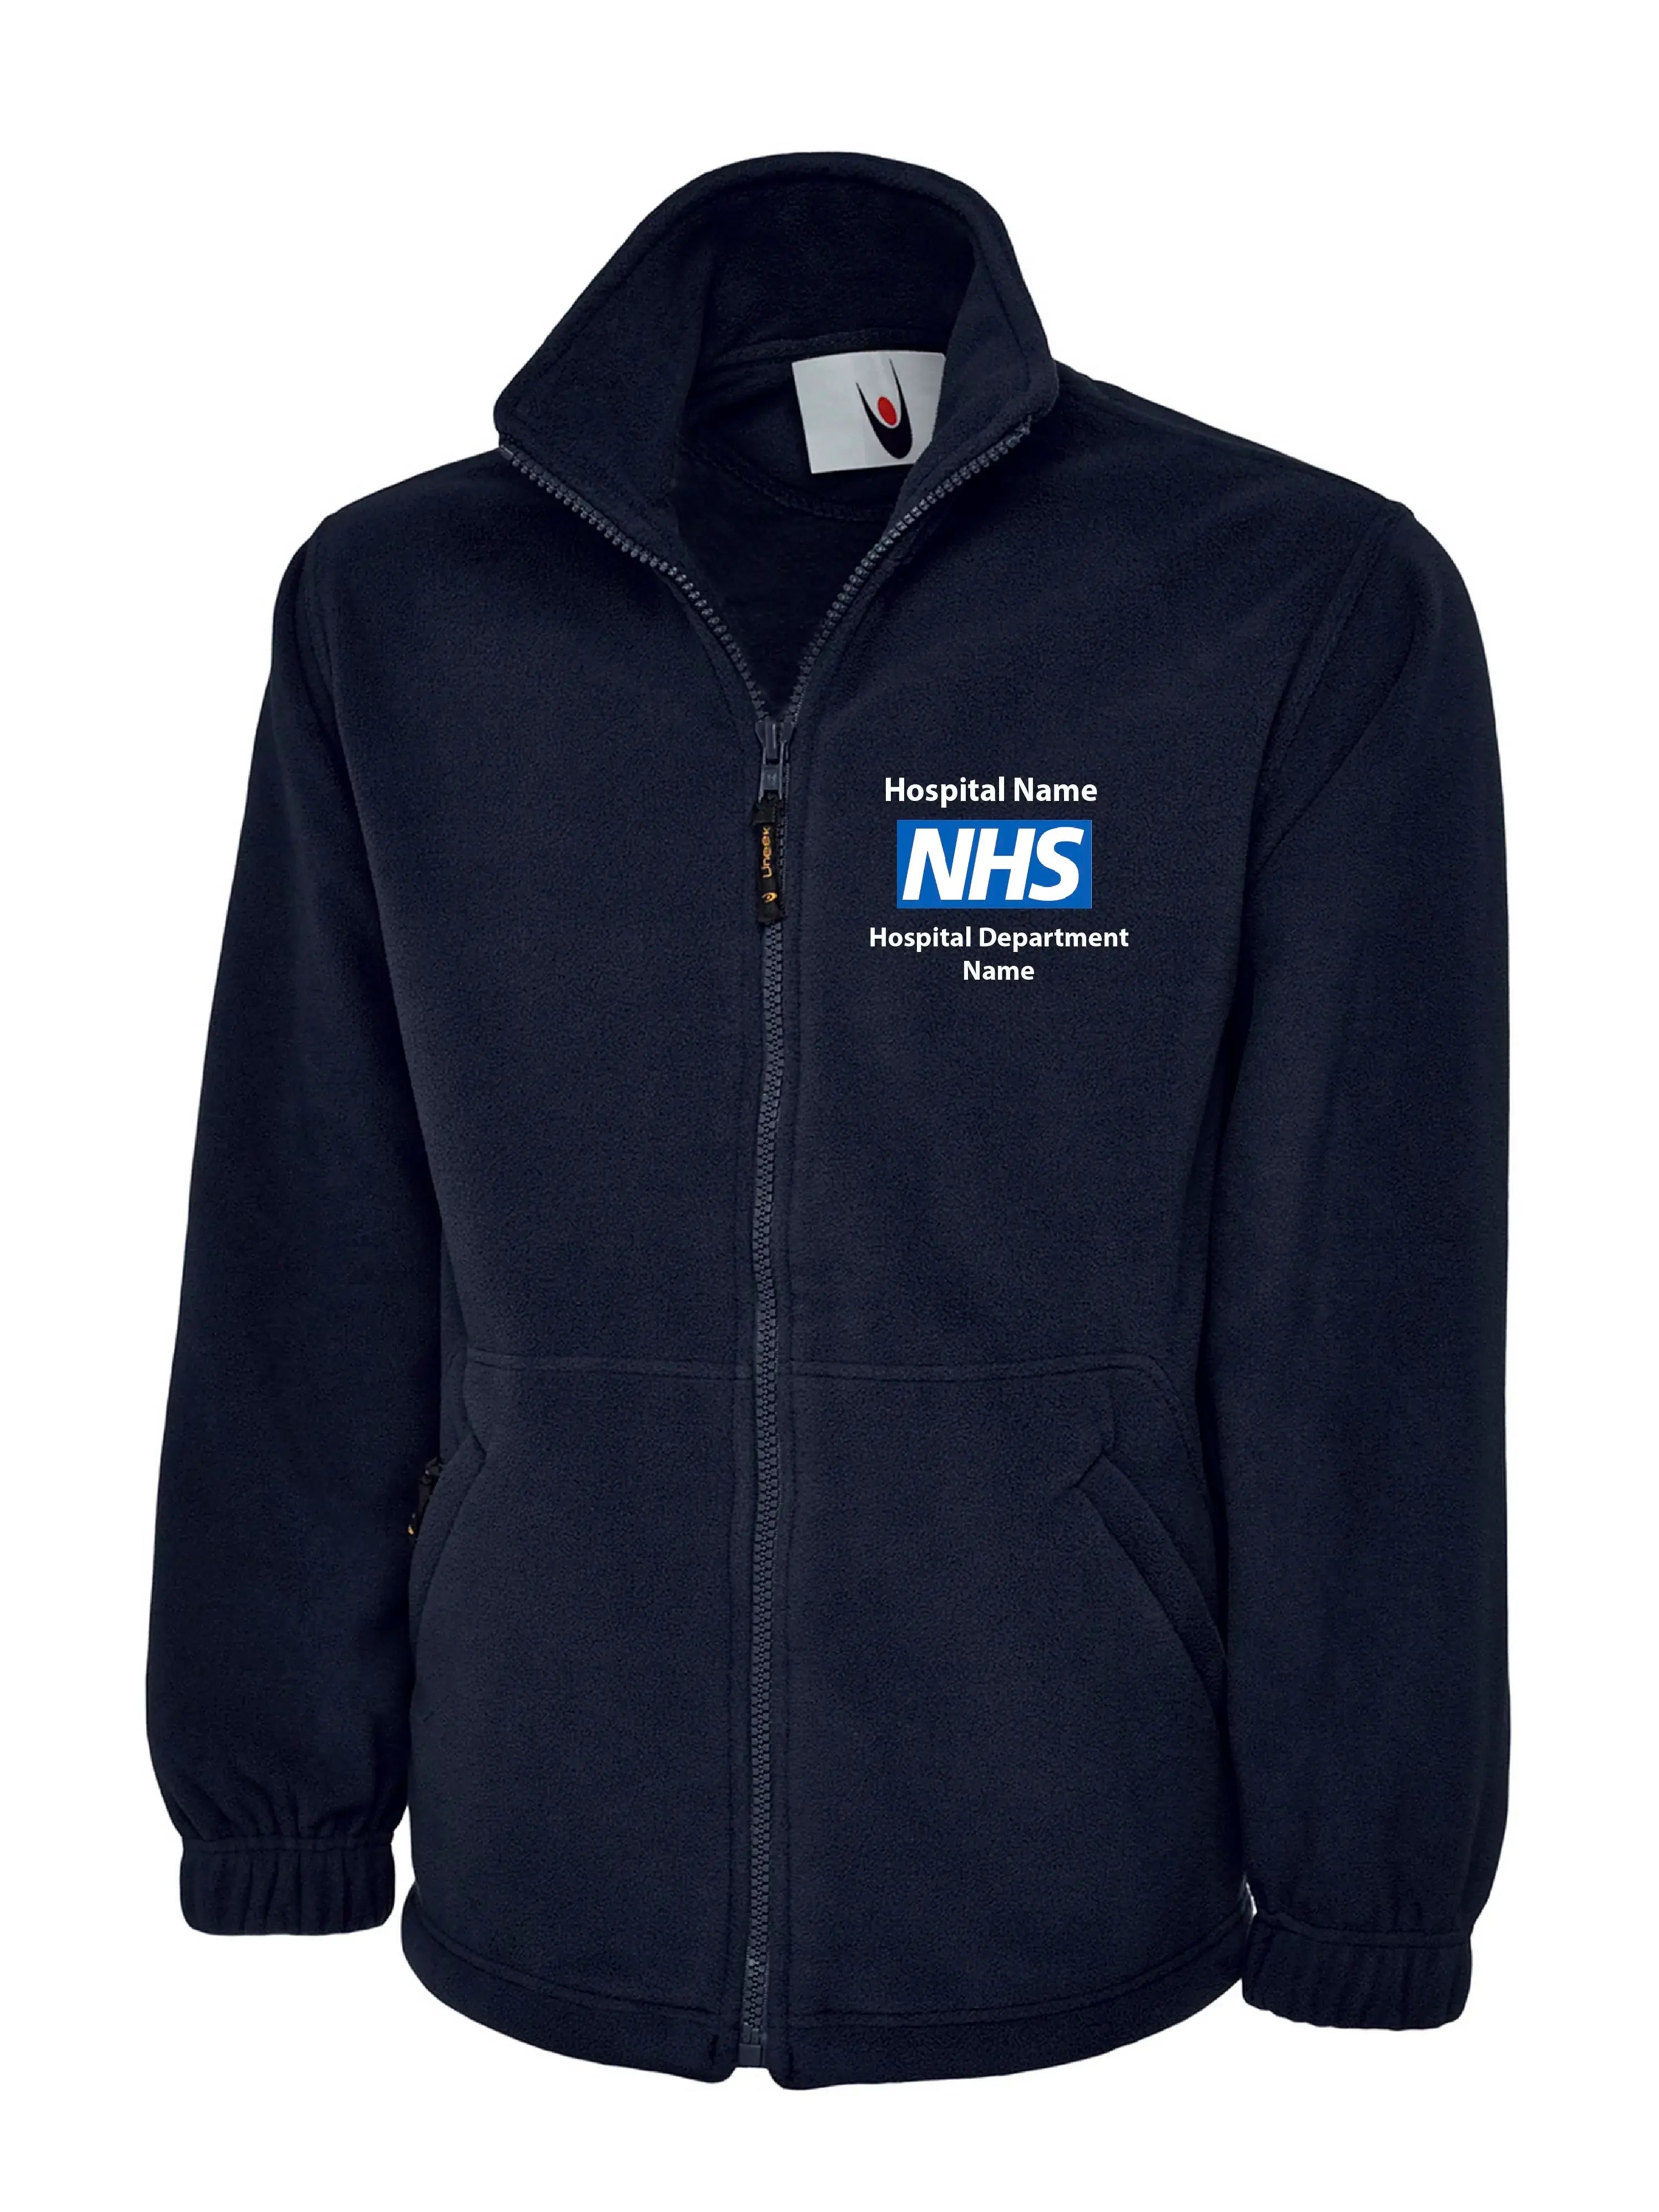 Nurse Fleece Jackets Personalised